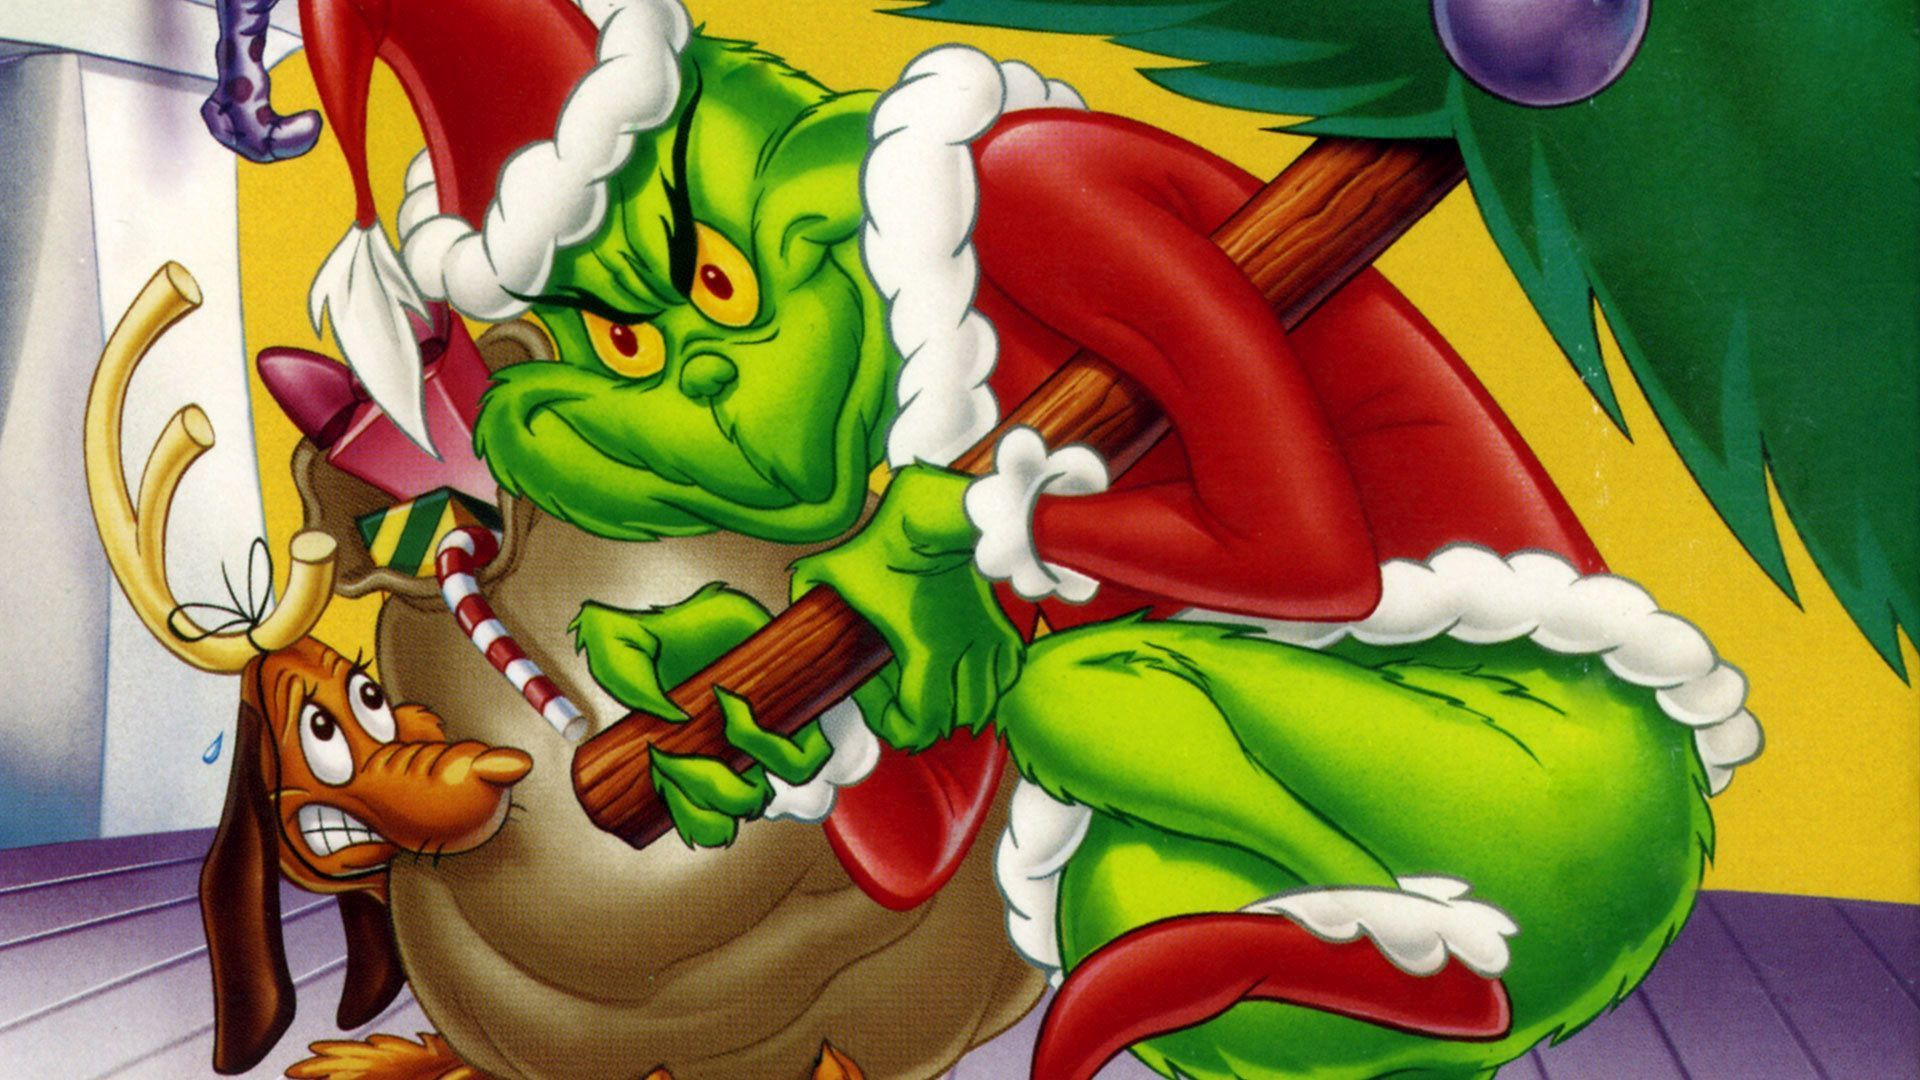 Giáng sinh Grinch chắc chắn sẽ không bao giờ là nhàm chán với những mảnh ghép đầy màu sắc và bất ngờ. Đến và cùng xem những hình ảnh đầy ấn tượng về Giáng sinh của Grinch, từ những đường phố tấp nập đến những cây thông rực rỡ. Hứa hẹn sẽ mang lại cho bạn những giây phút thư giãn tuyệt vời.